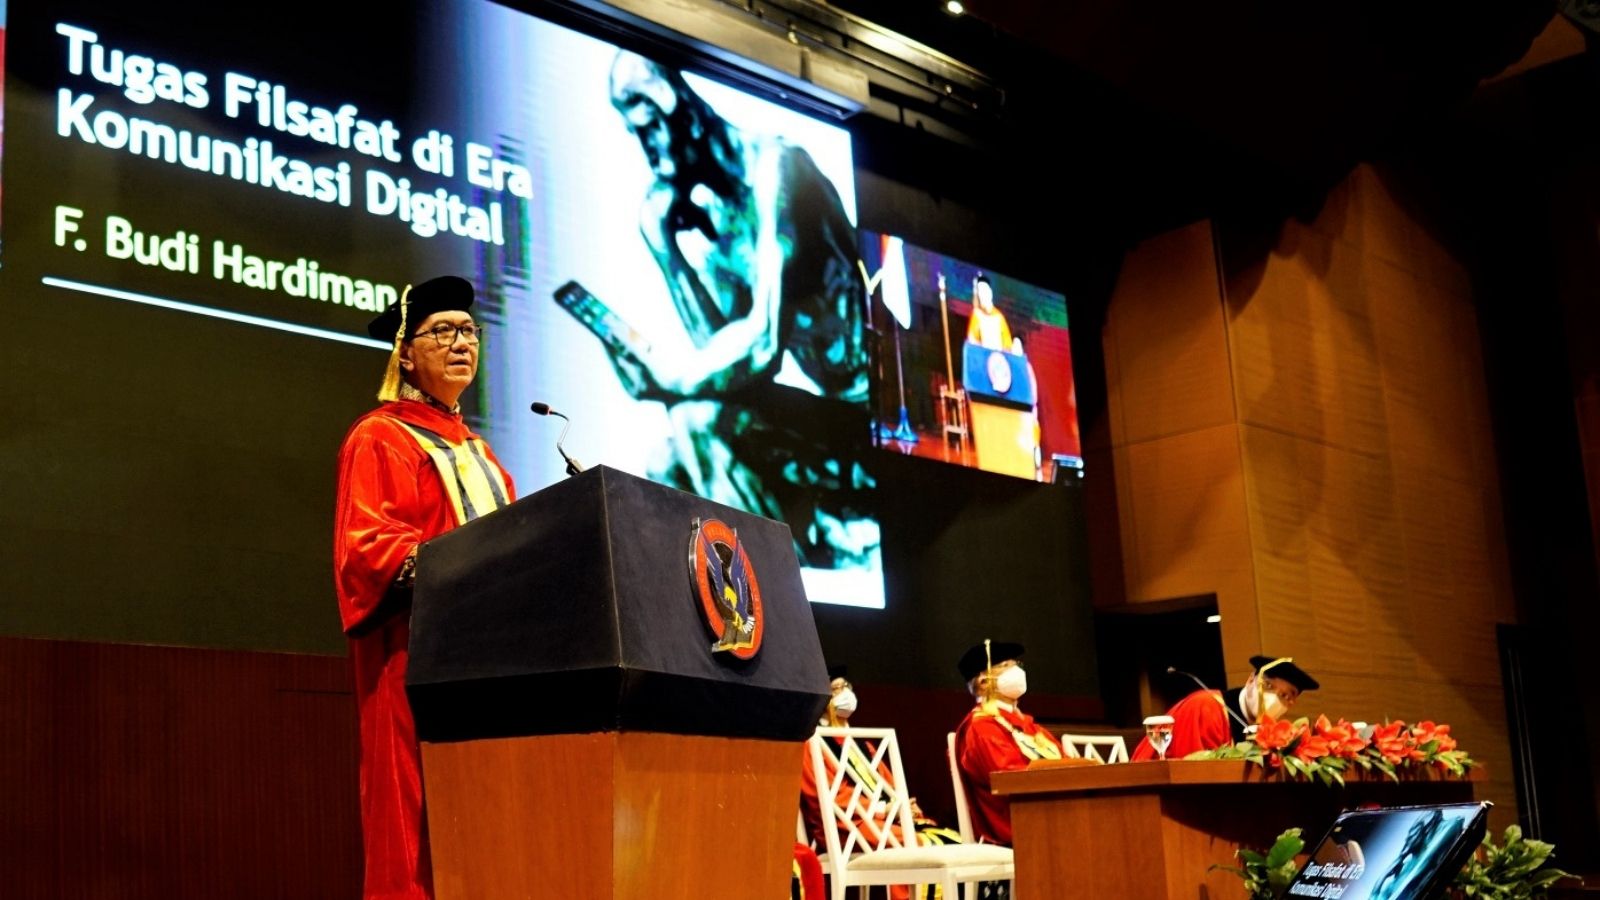 Prof. Dr. Fransisco Budi Hardiman Dikukuhkan Sebagai Guru Besar Ilmu Filsafat UPH